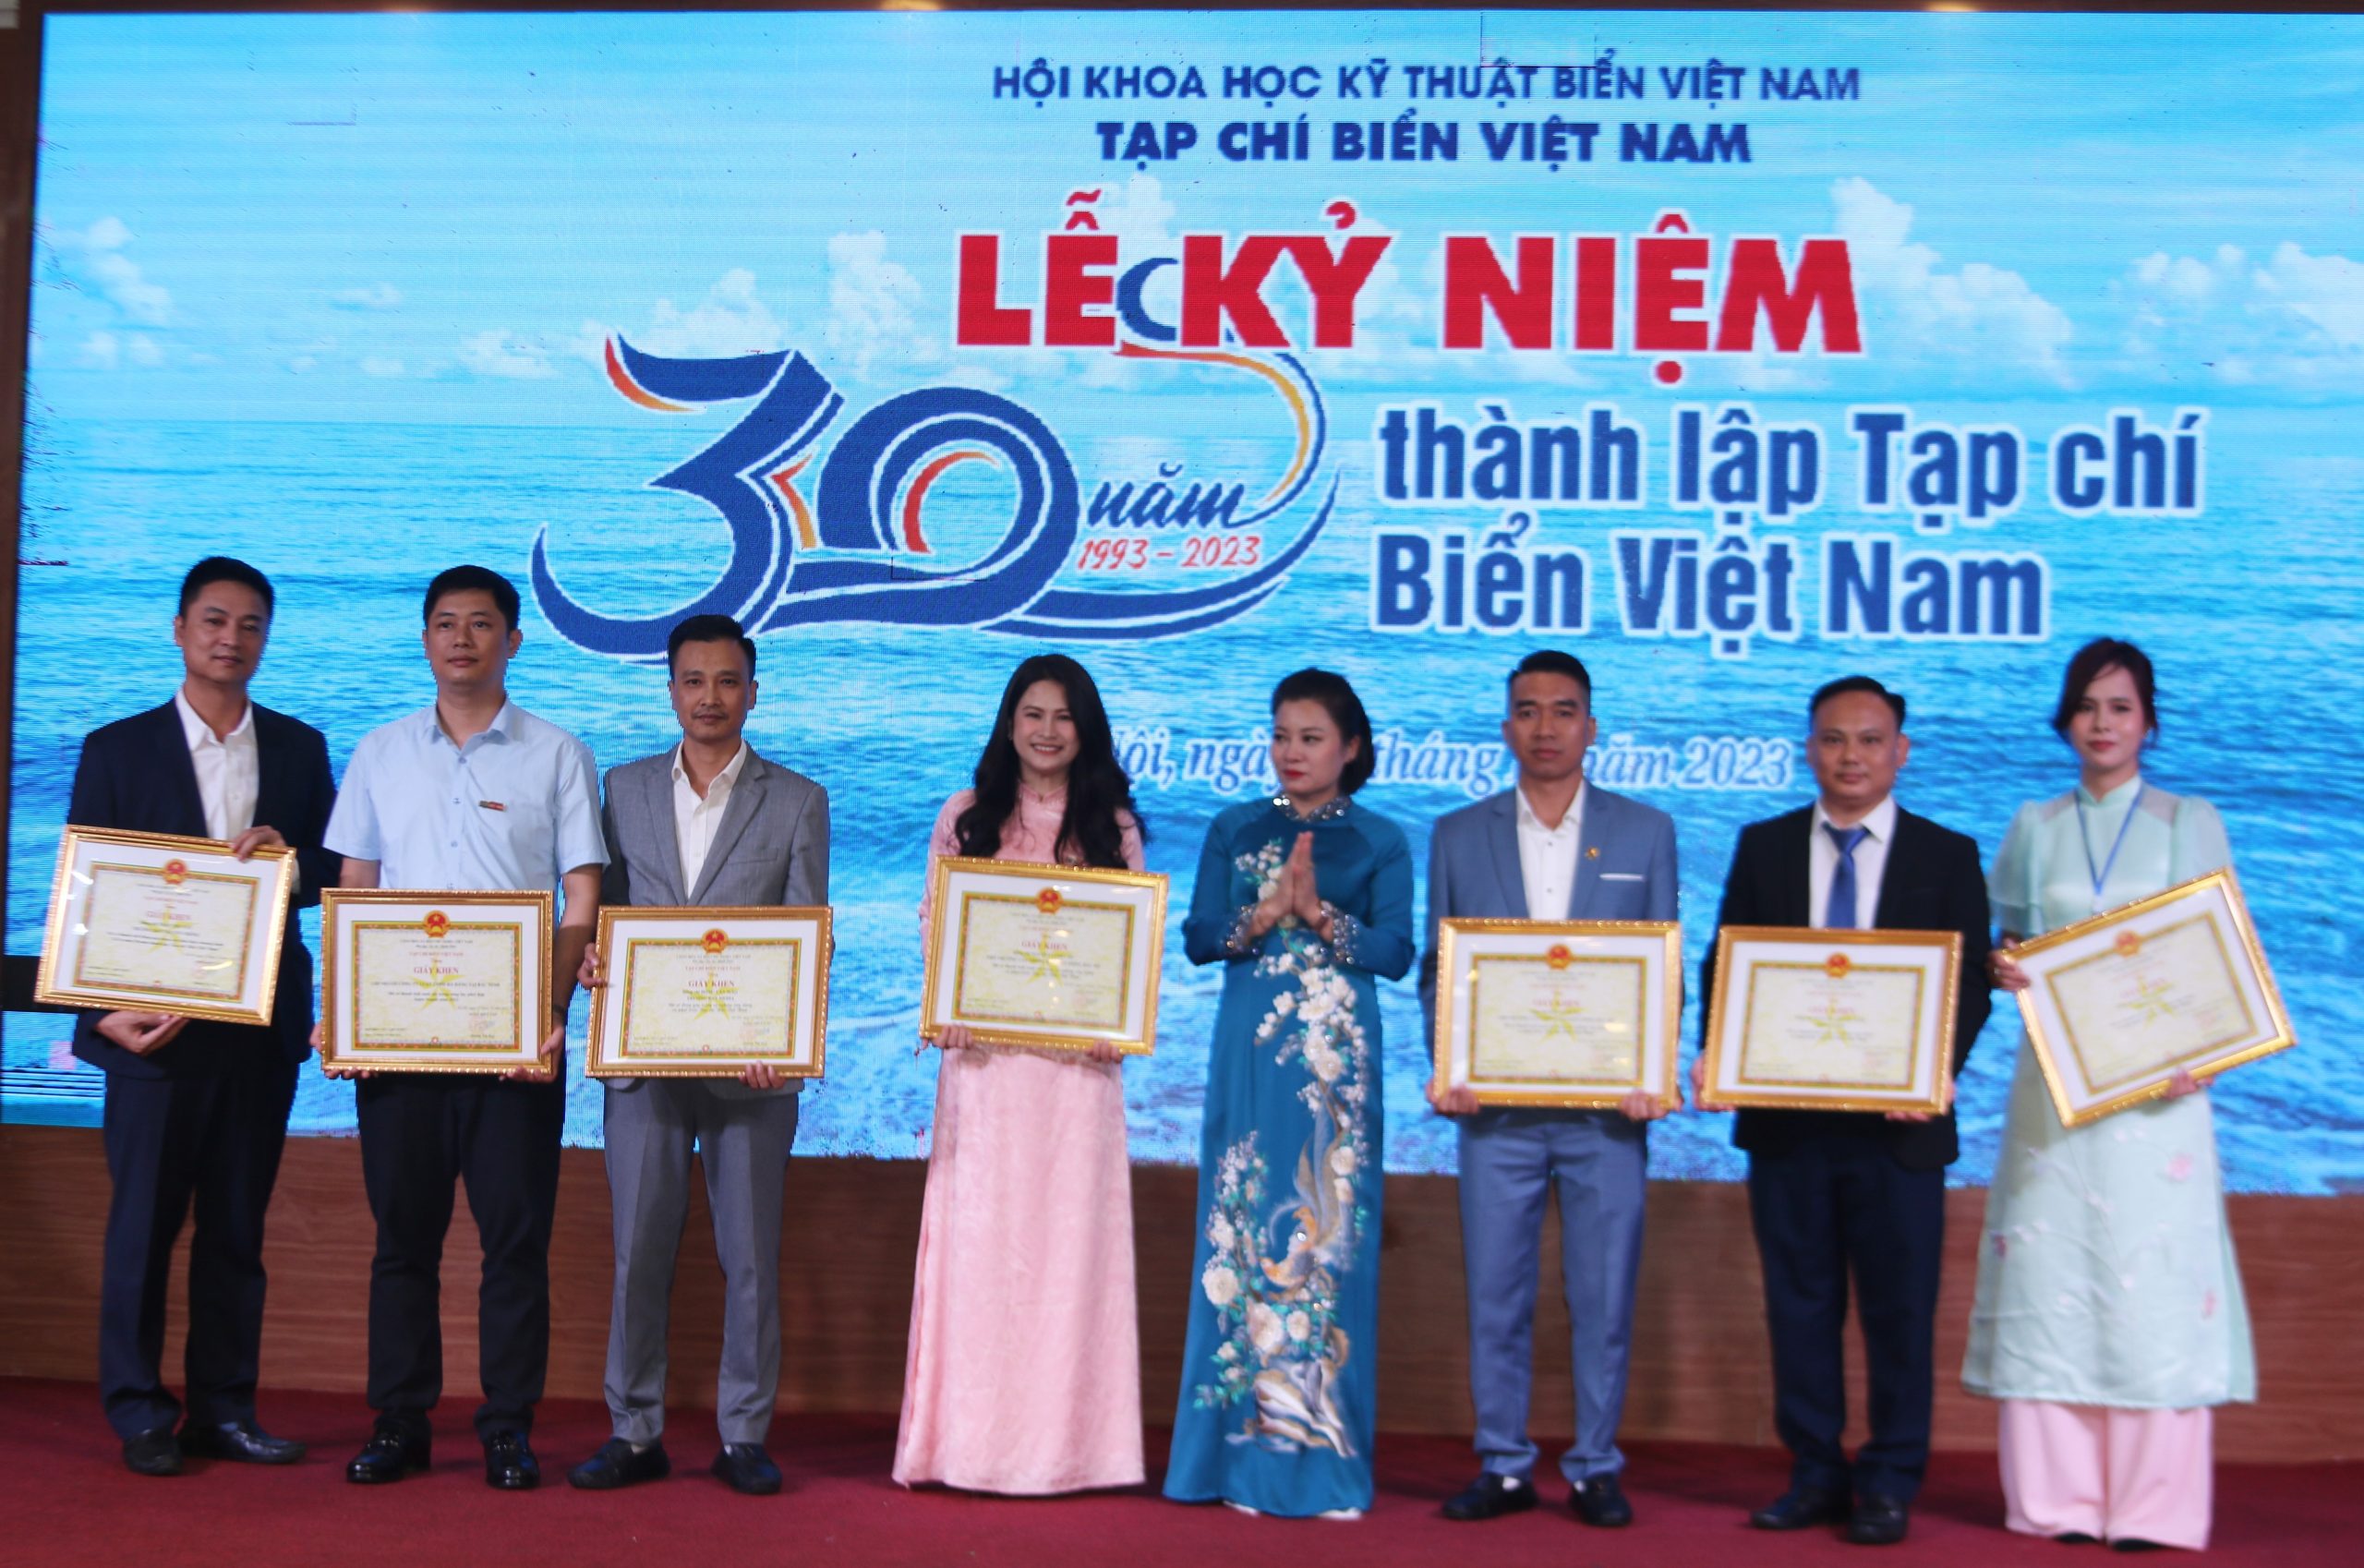 Tạp chí Biển Việt Nam long trọng tổ chức lễ kỷ niệm 30 năm thành lập